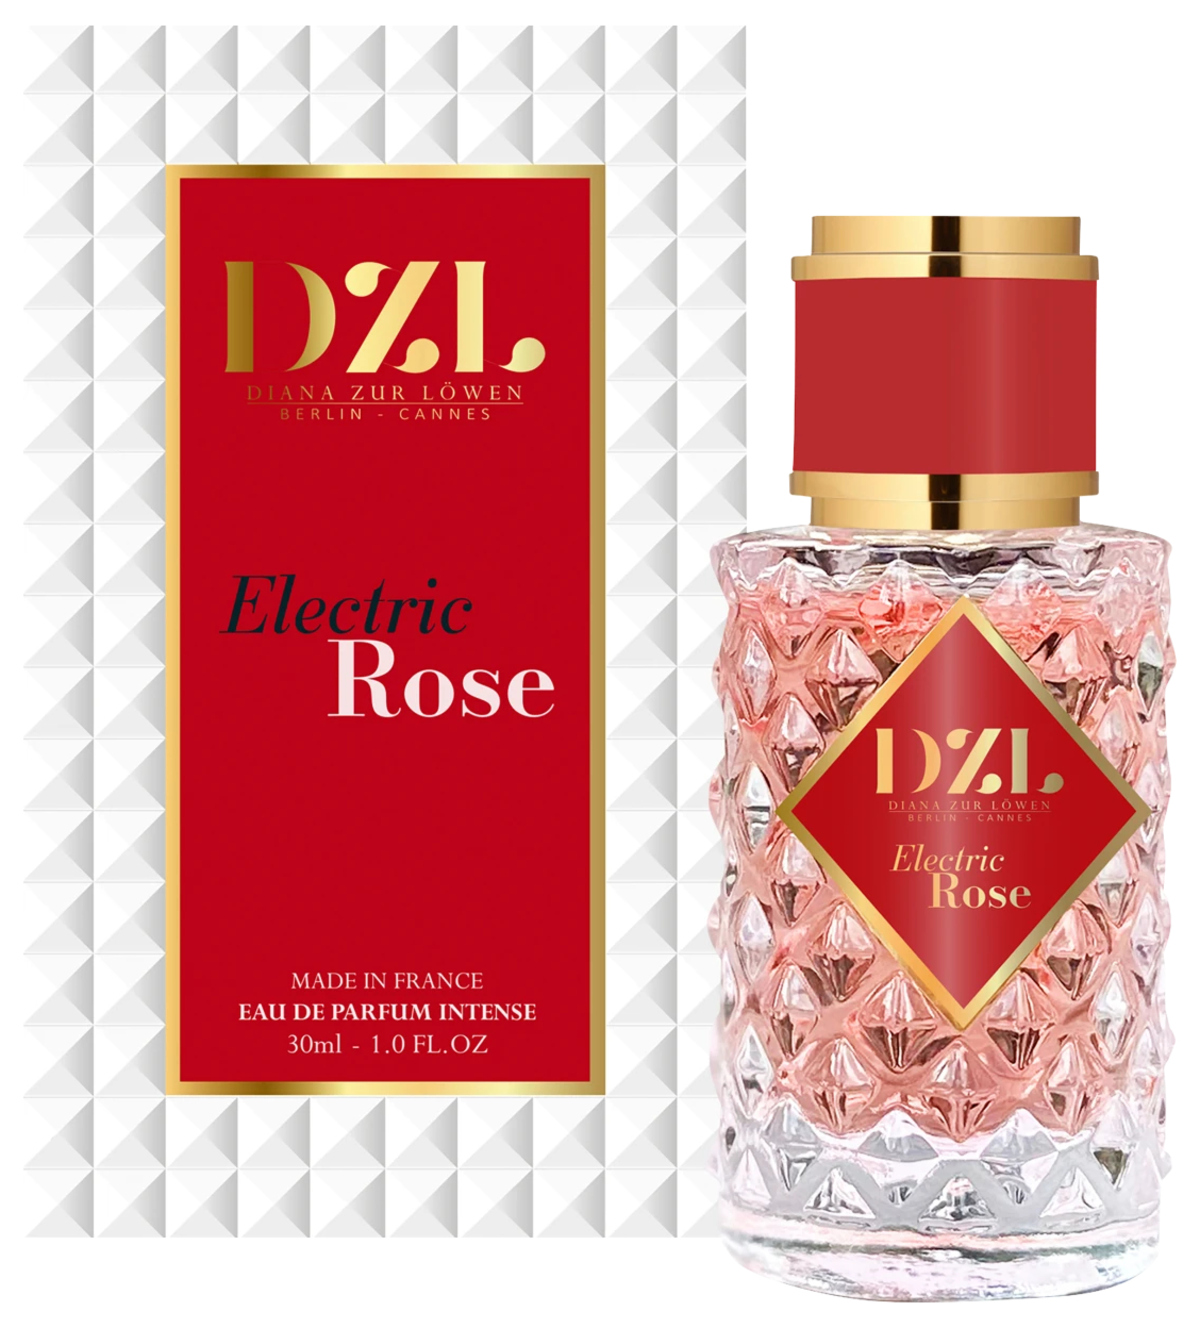 Electric Rose (Eau de Parfum) - Diana zur Löwen